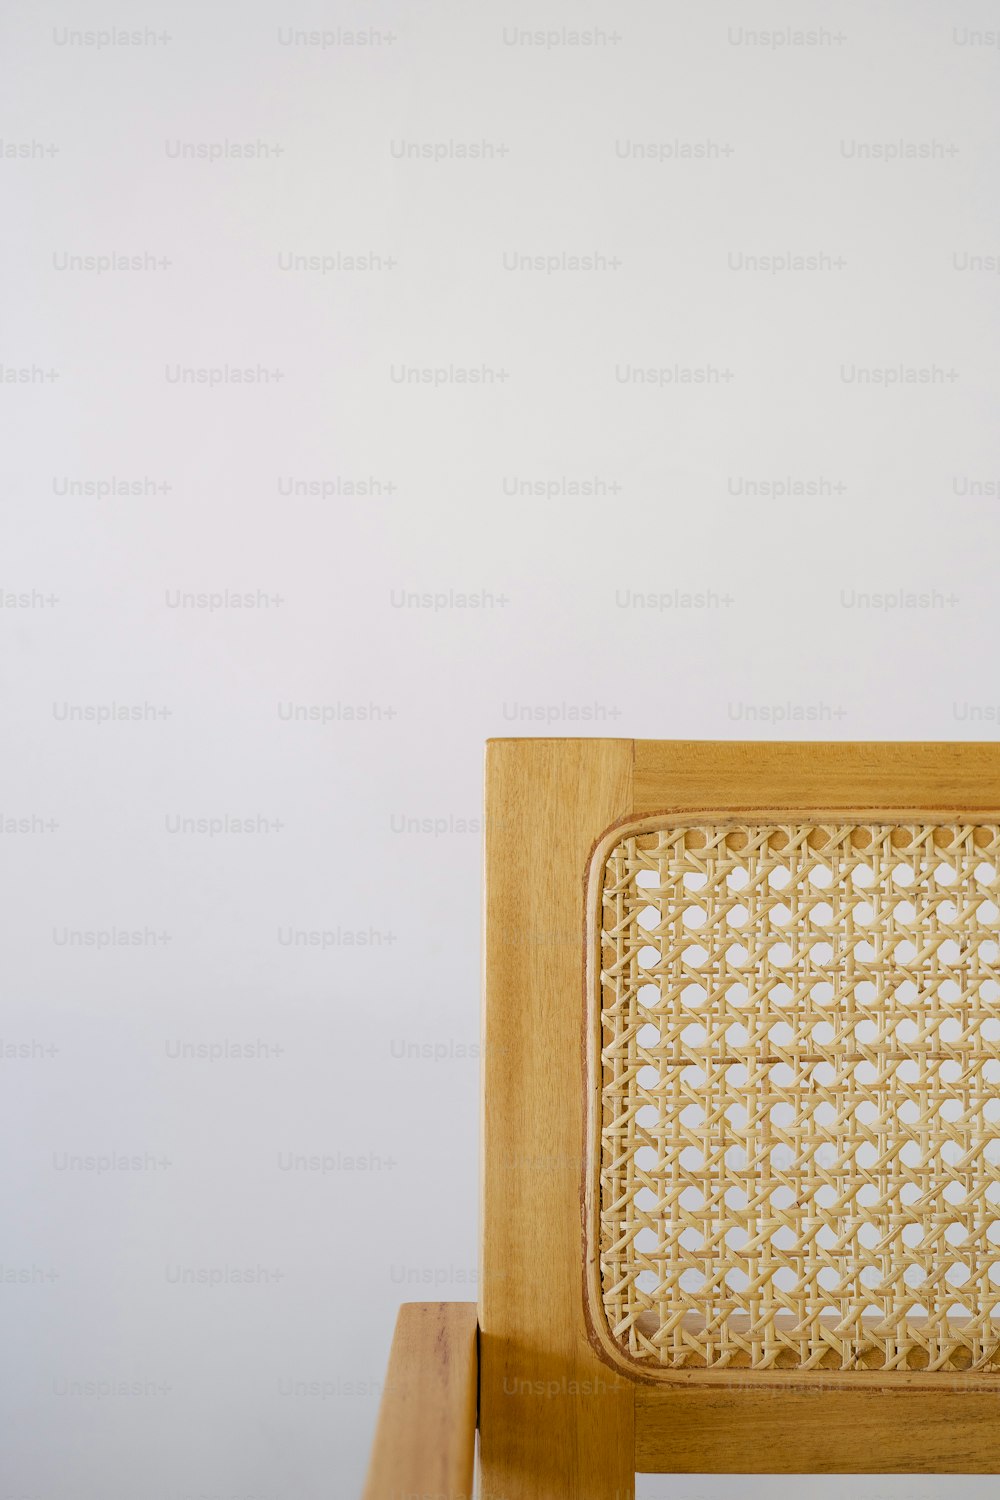 Un primer plano de una silla de madera con un asiento tejido